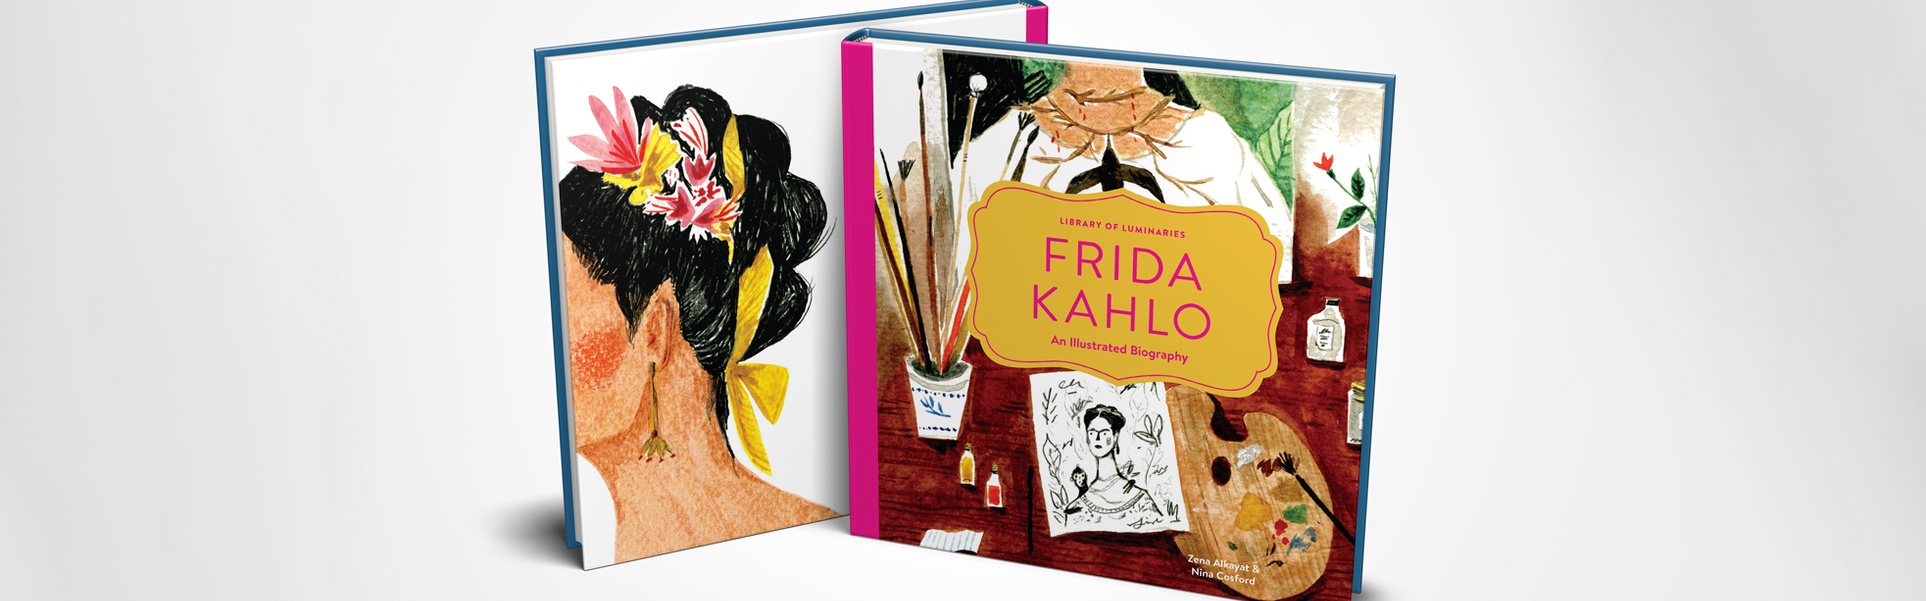 Frida Kahlo Un libro de biografía ilustrada